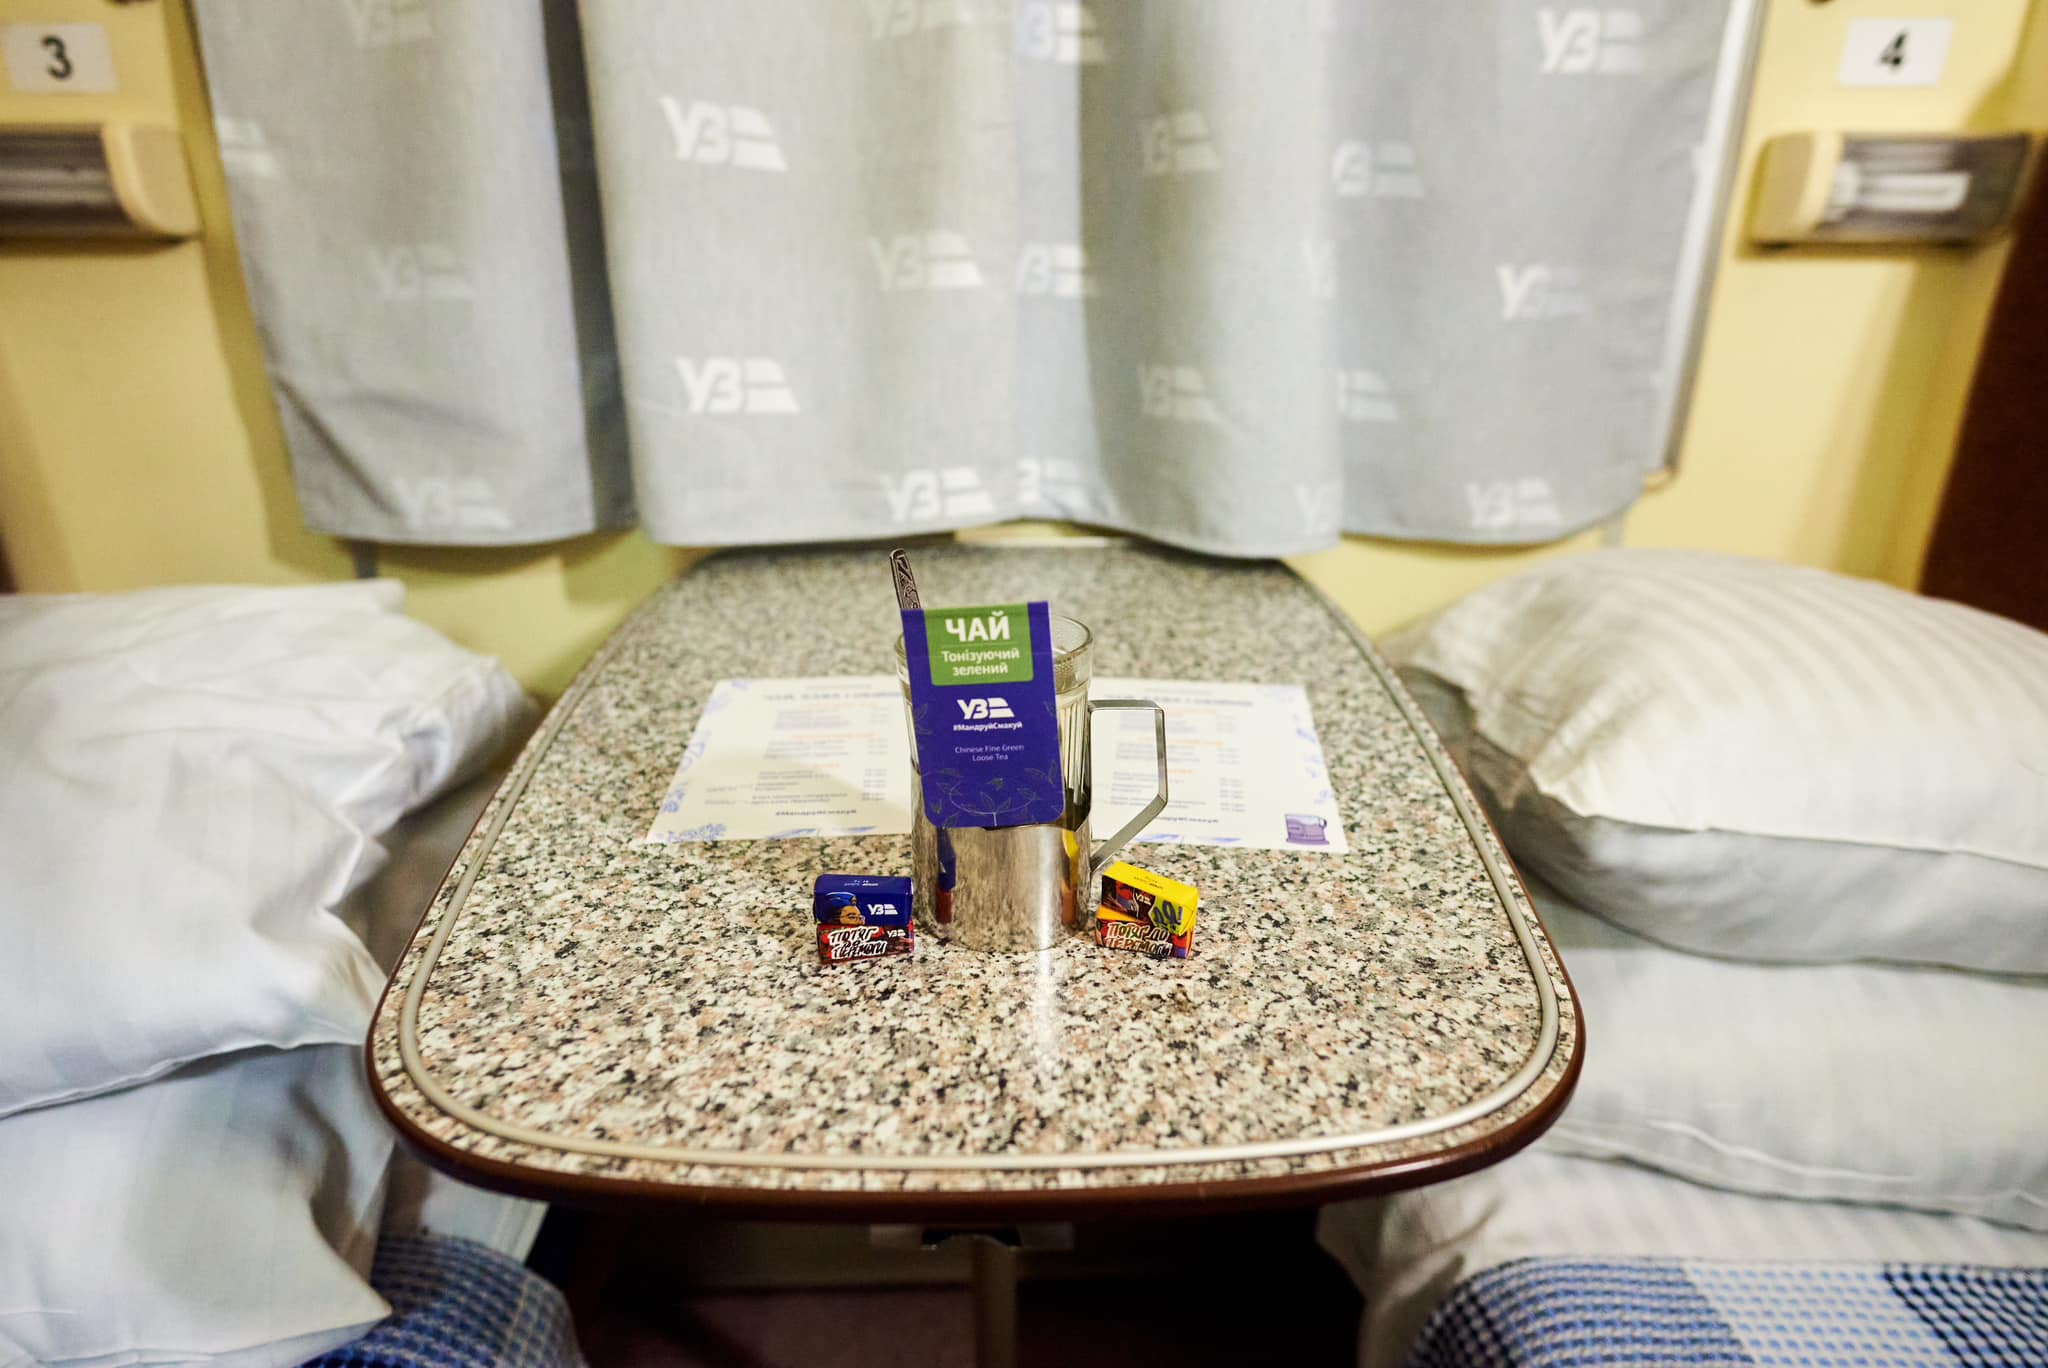 УЗ обновила меню чая и кофе и возвращает в поезда подстаканники. || Фото: Укрзалізниця